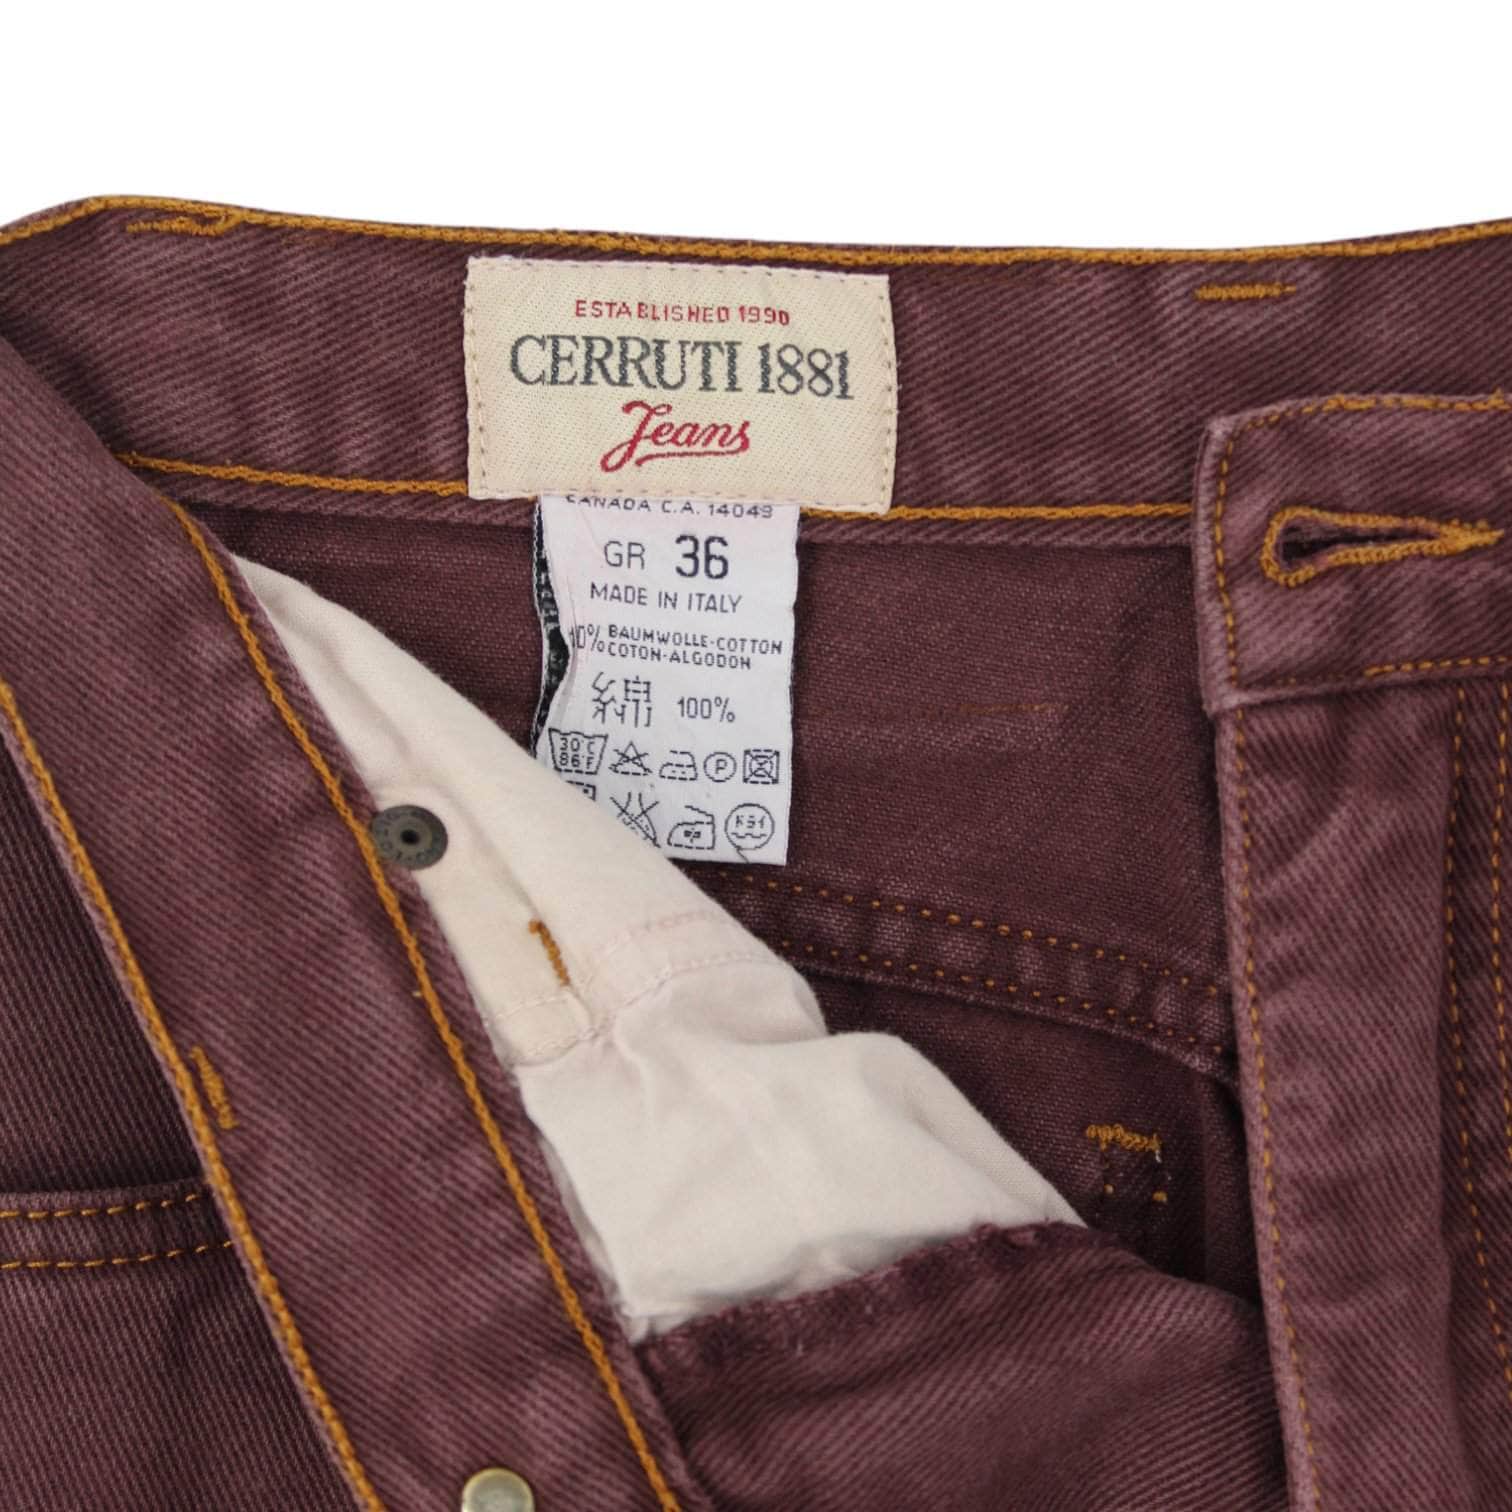 Vintage Cerruti Arte 1881 Maroon Jeans